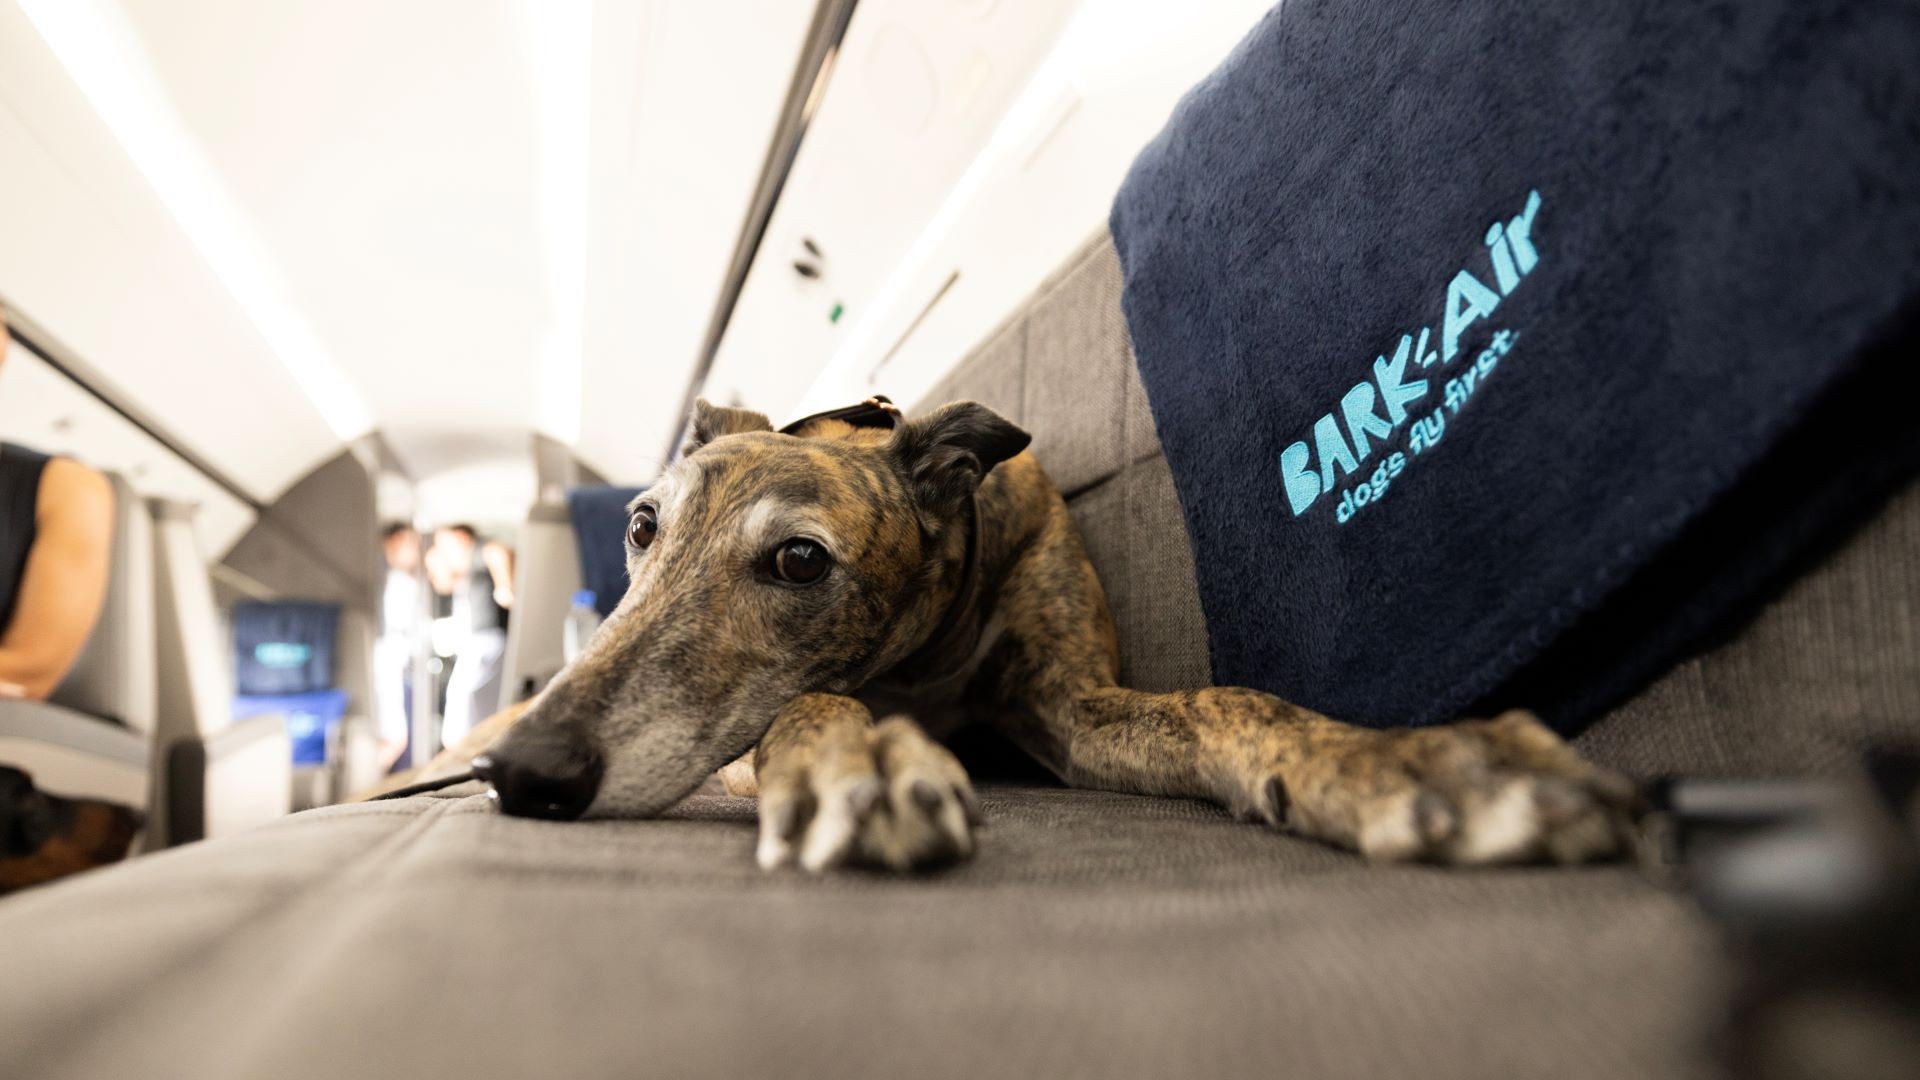 Aérea dos EUA vai oferecer voos para cães viajarem com donos na cabine; pets terão direito a ‘drink’ e serviço de limpeza